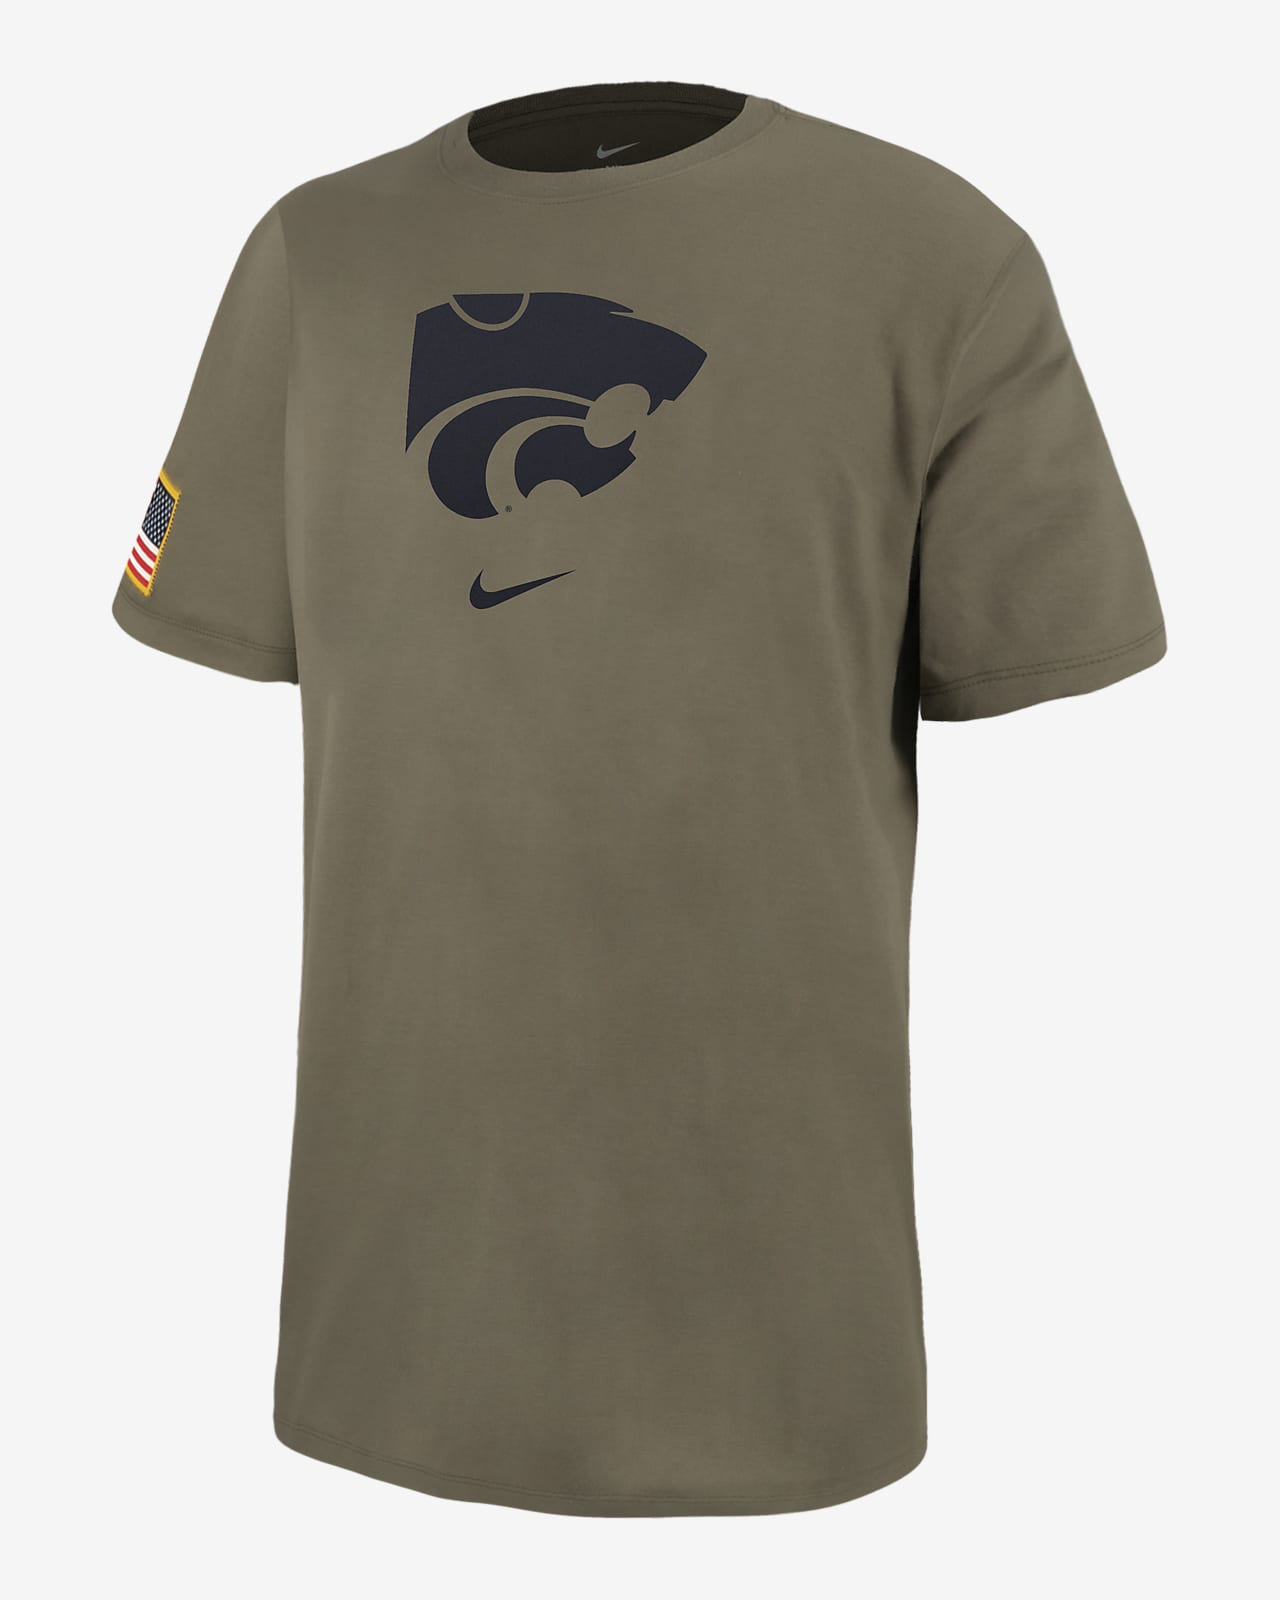 Kansas State Men's Nike College T-Shirt